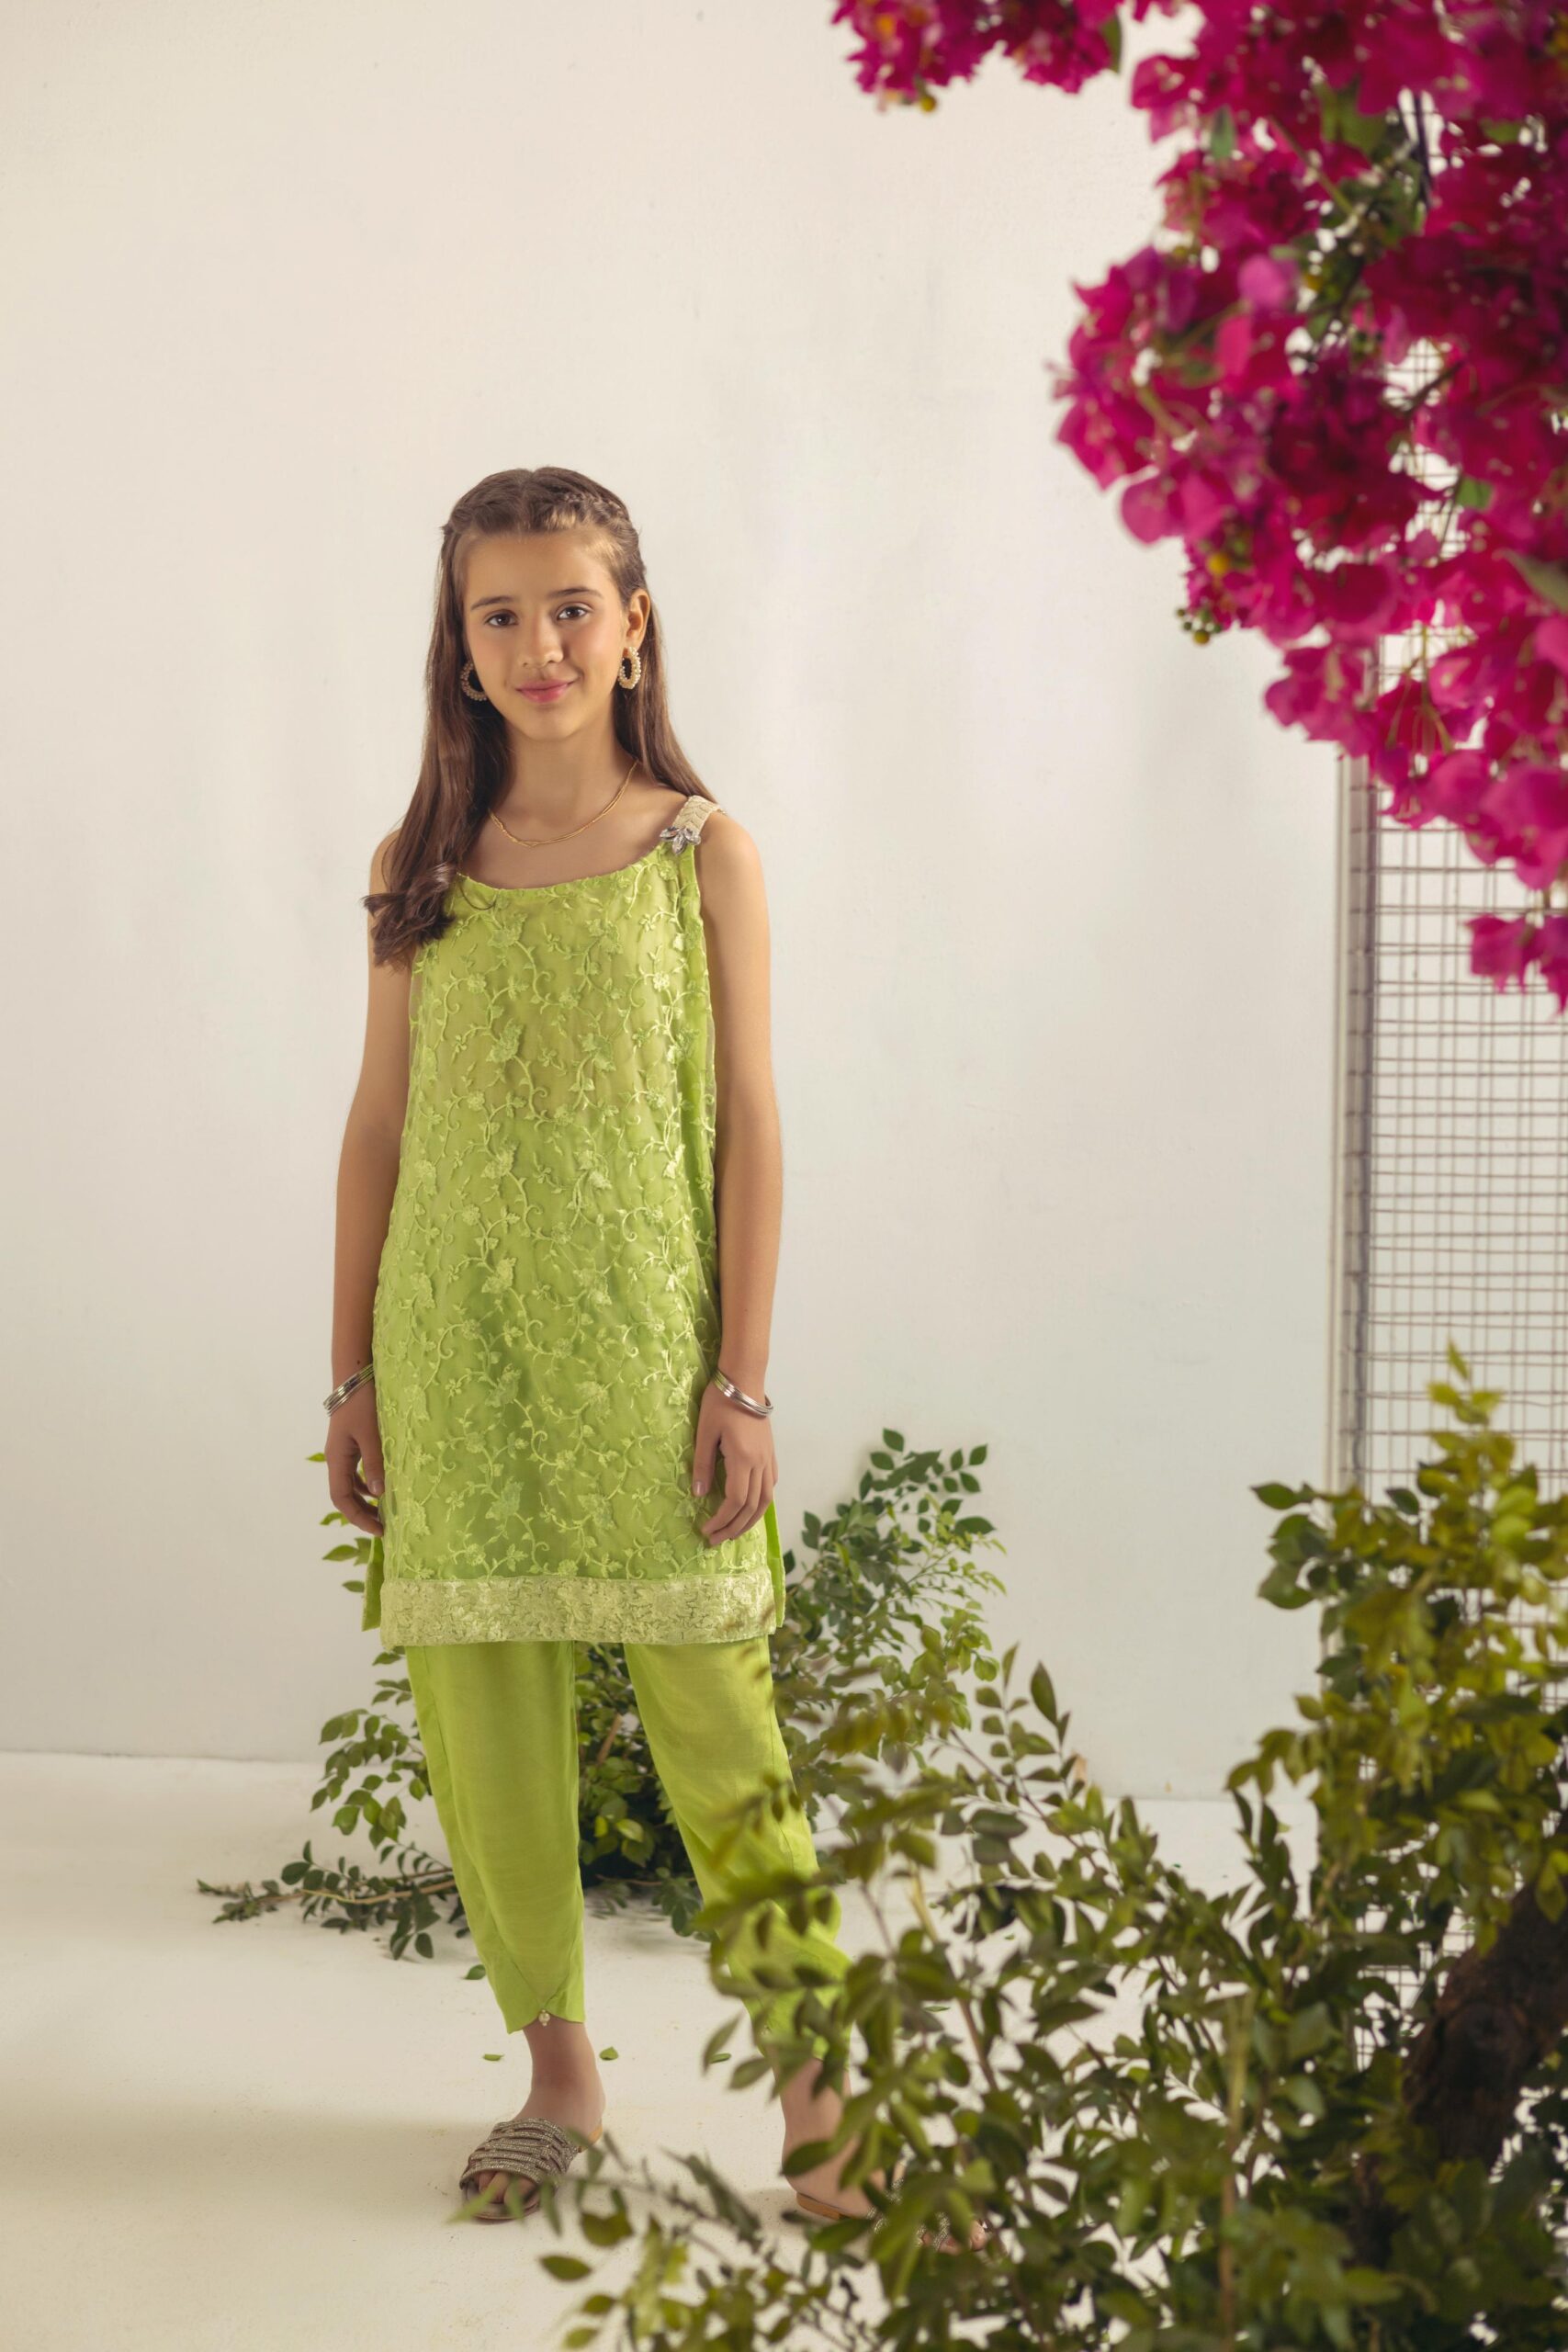 Shehrnaz Kidswear Online Store Pakistan